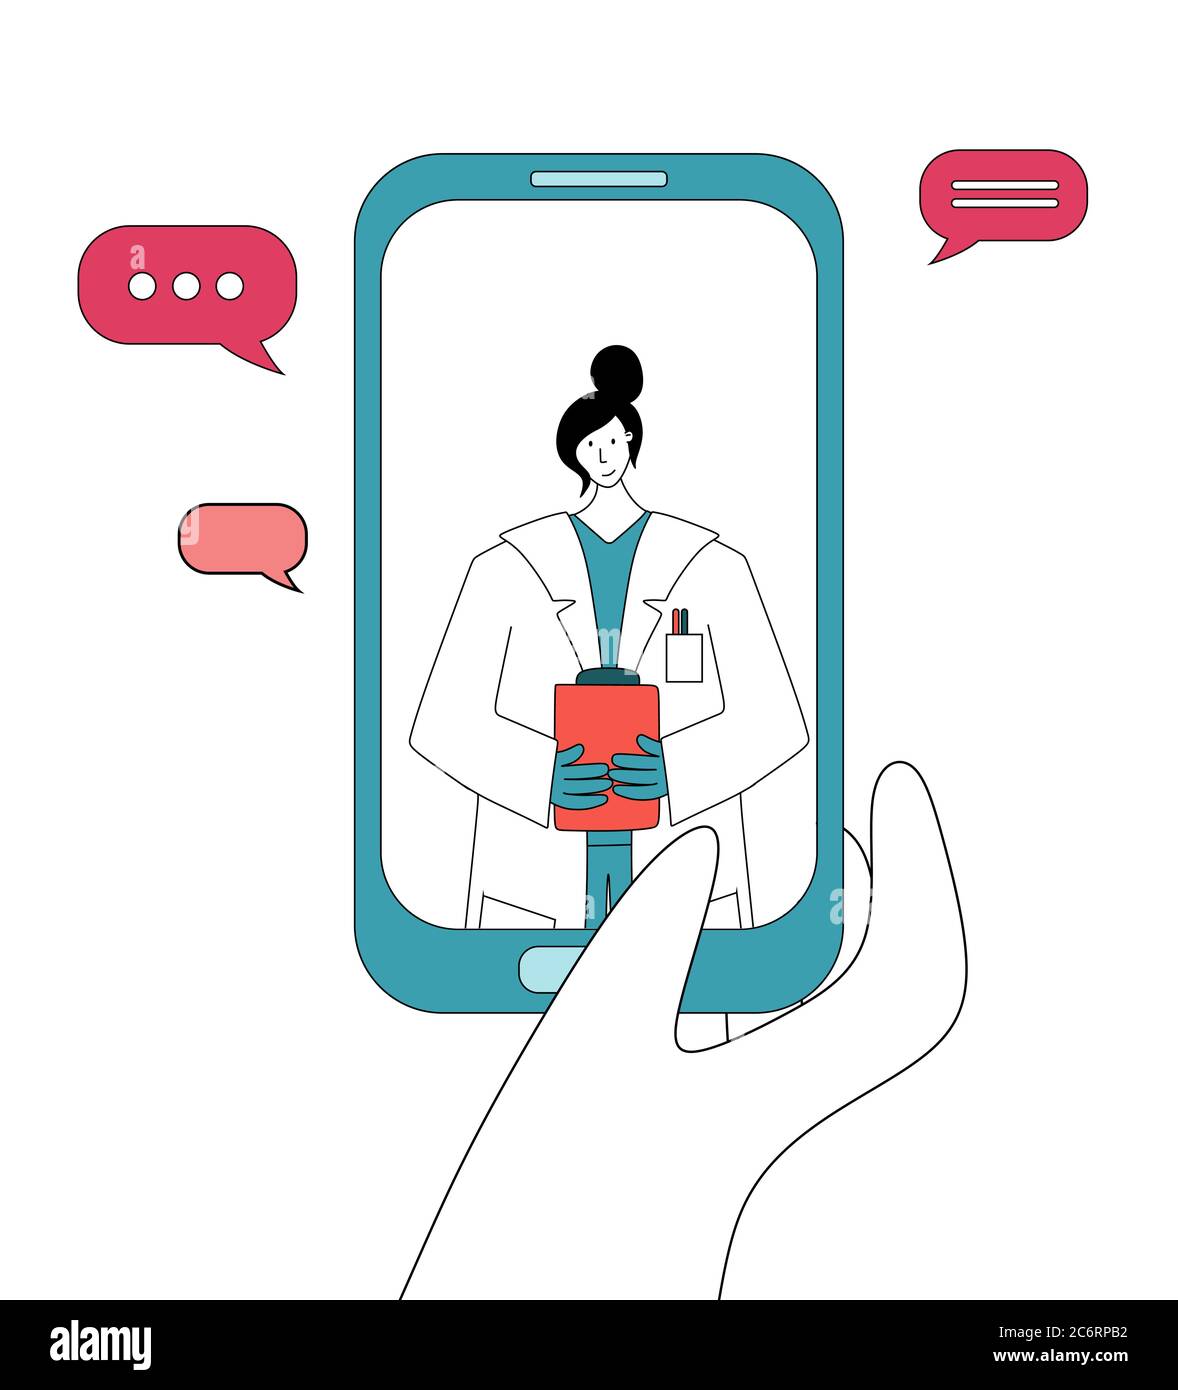 Écran de smartphone avec femme médecin sur chat dans Messenger. Consultation en ligne. Service de conseil médical en ligne, télé-médecine, cardiolo Illustration de Vecteur